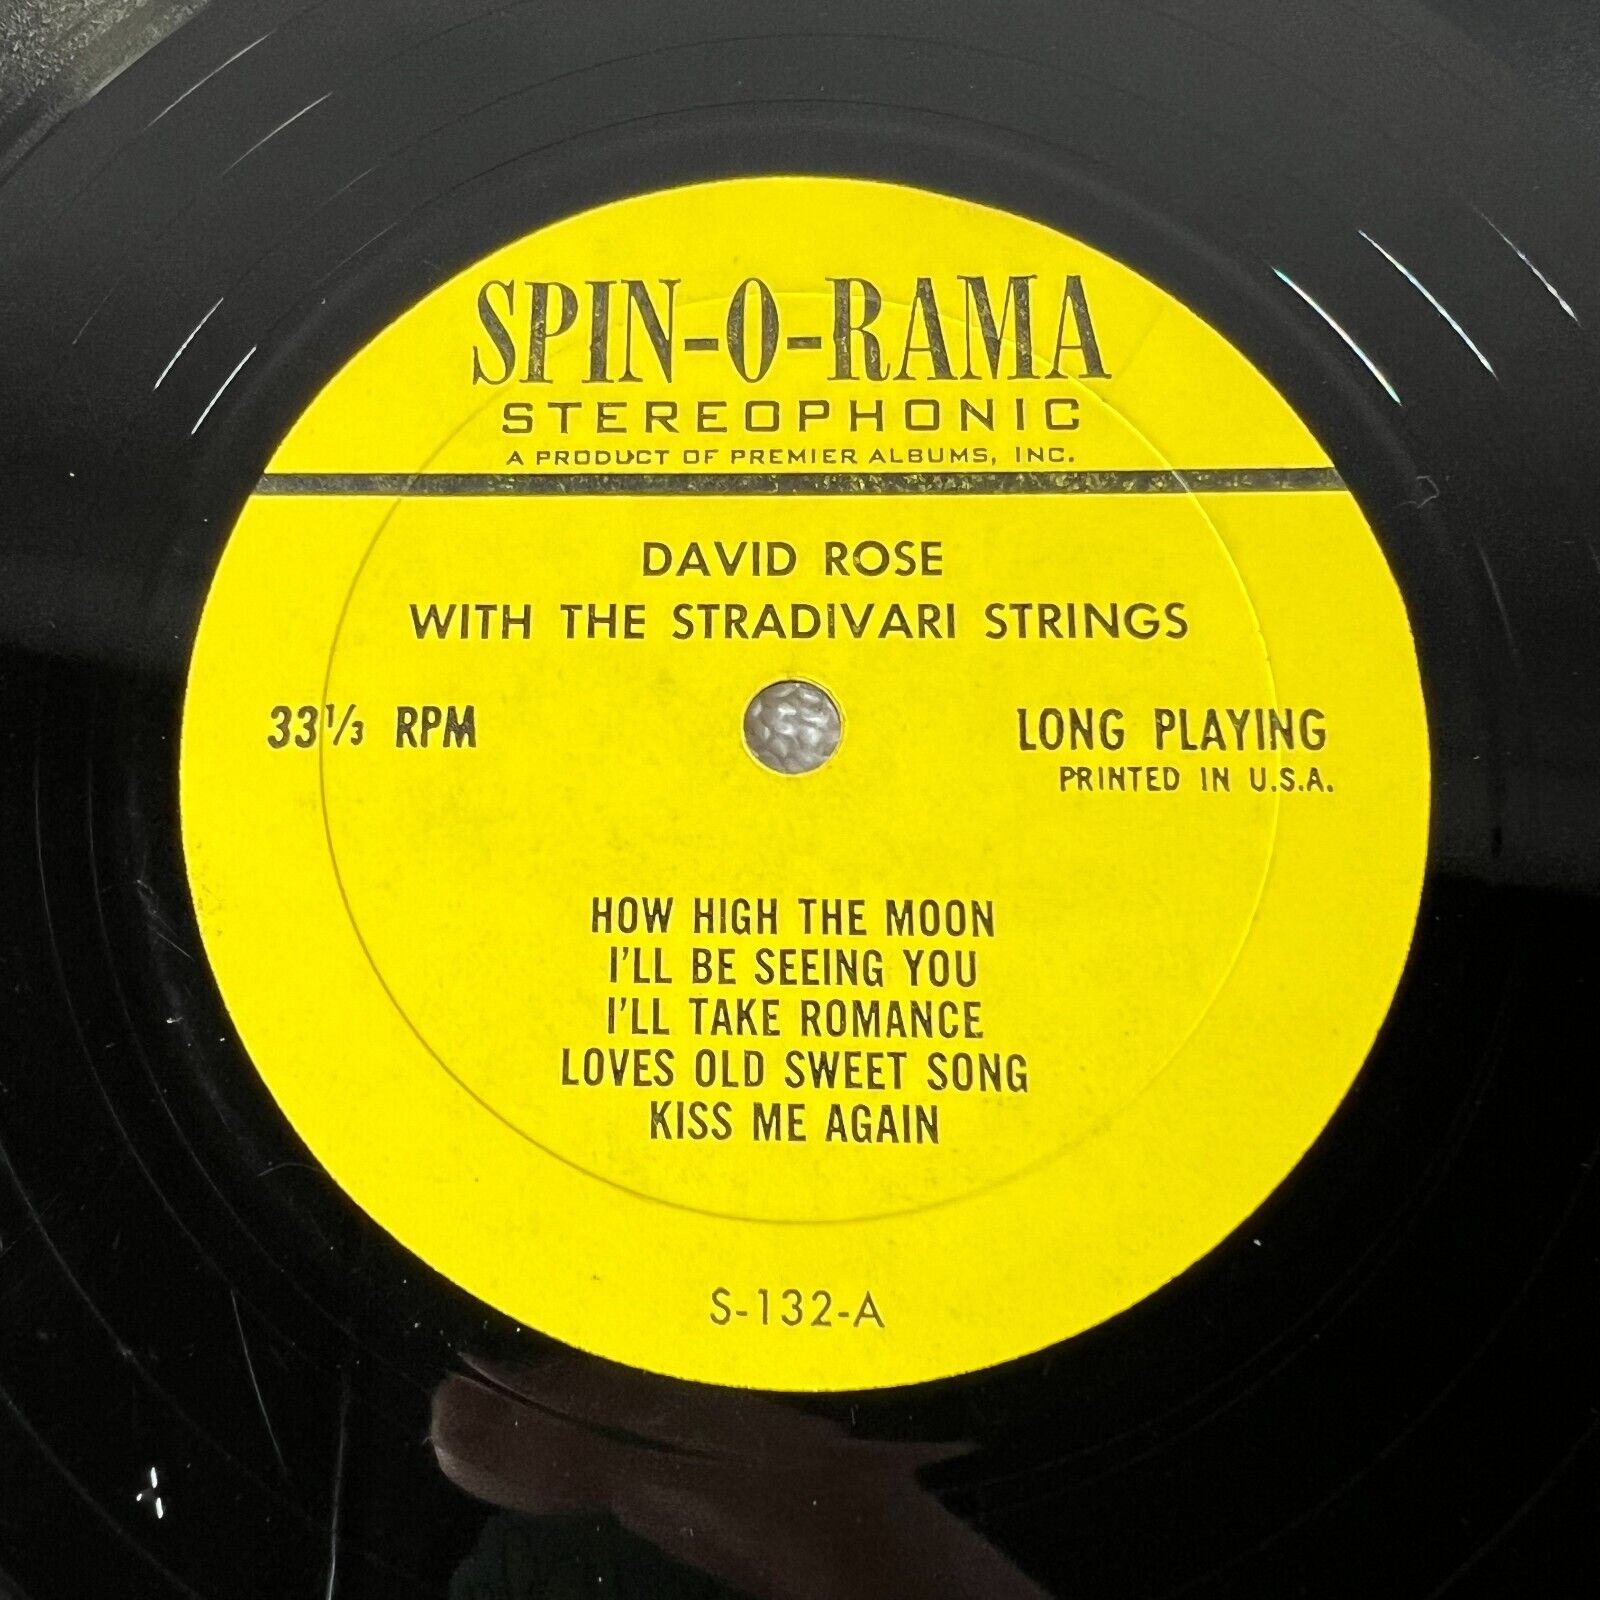 David Rose The Stradivari Strings André Previn Vibrant Strings MW124-116 Vinyl